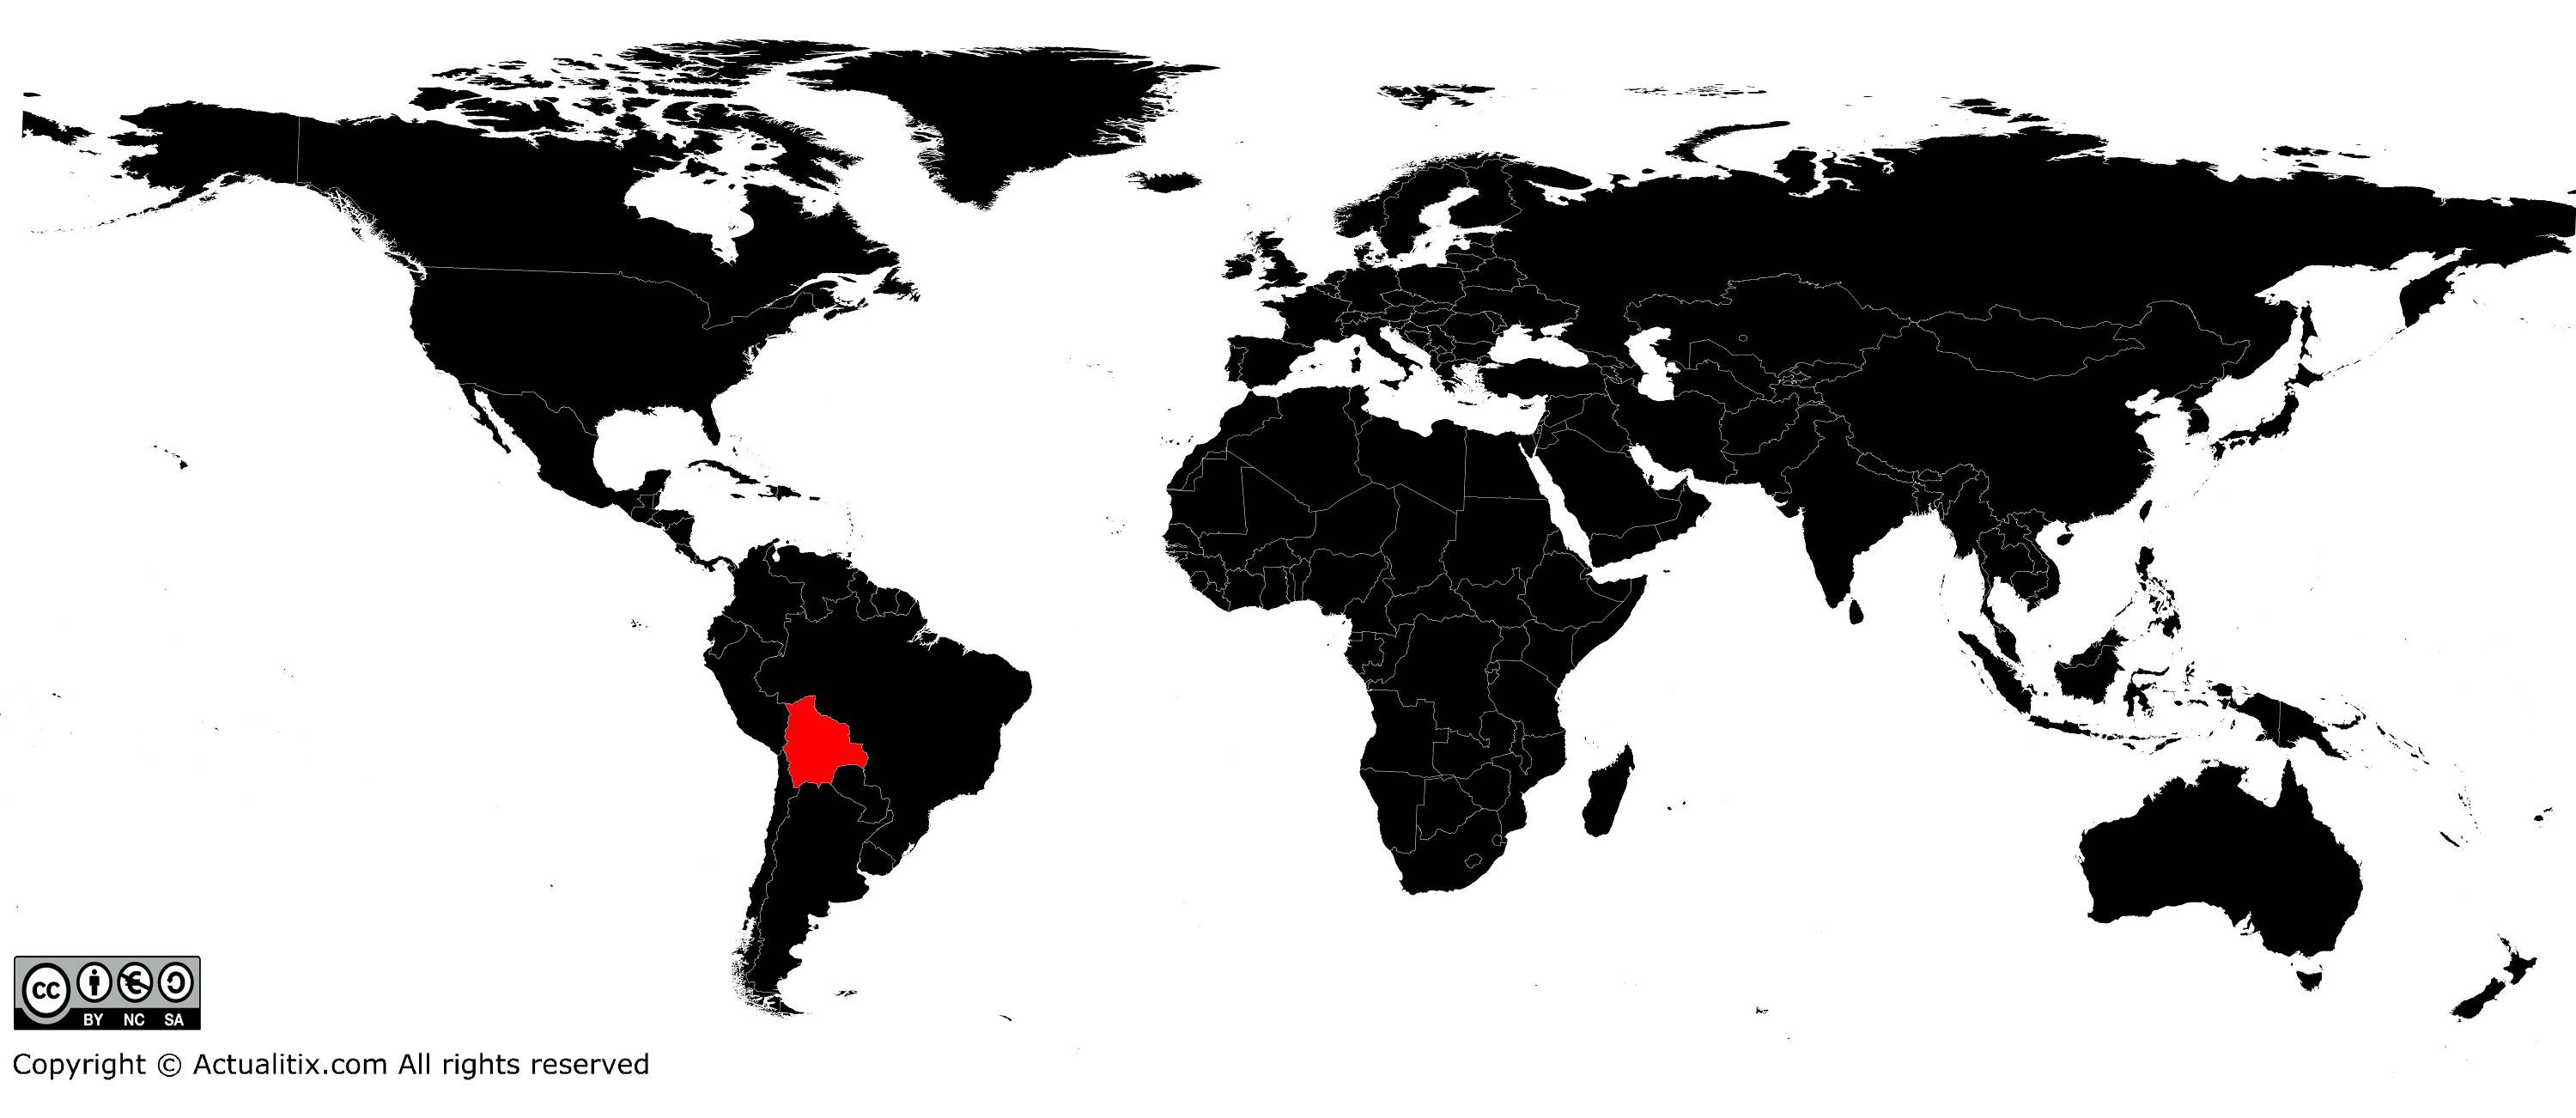 Bolivie sur une carte du monde